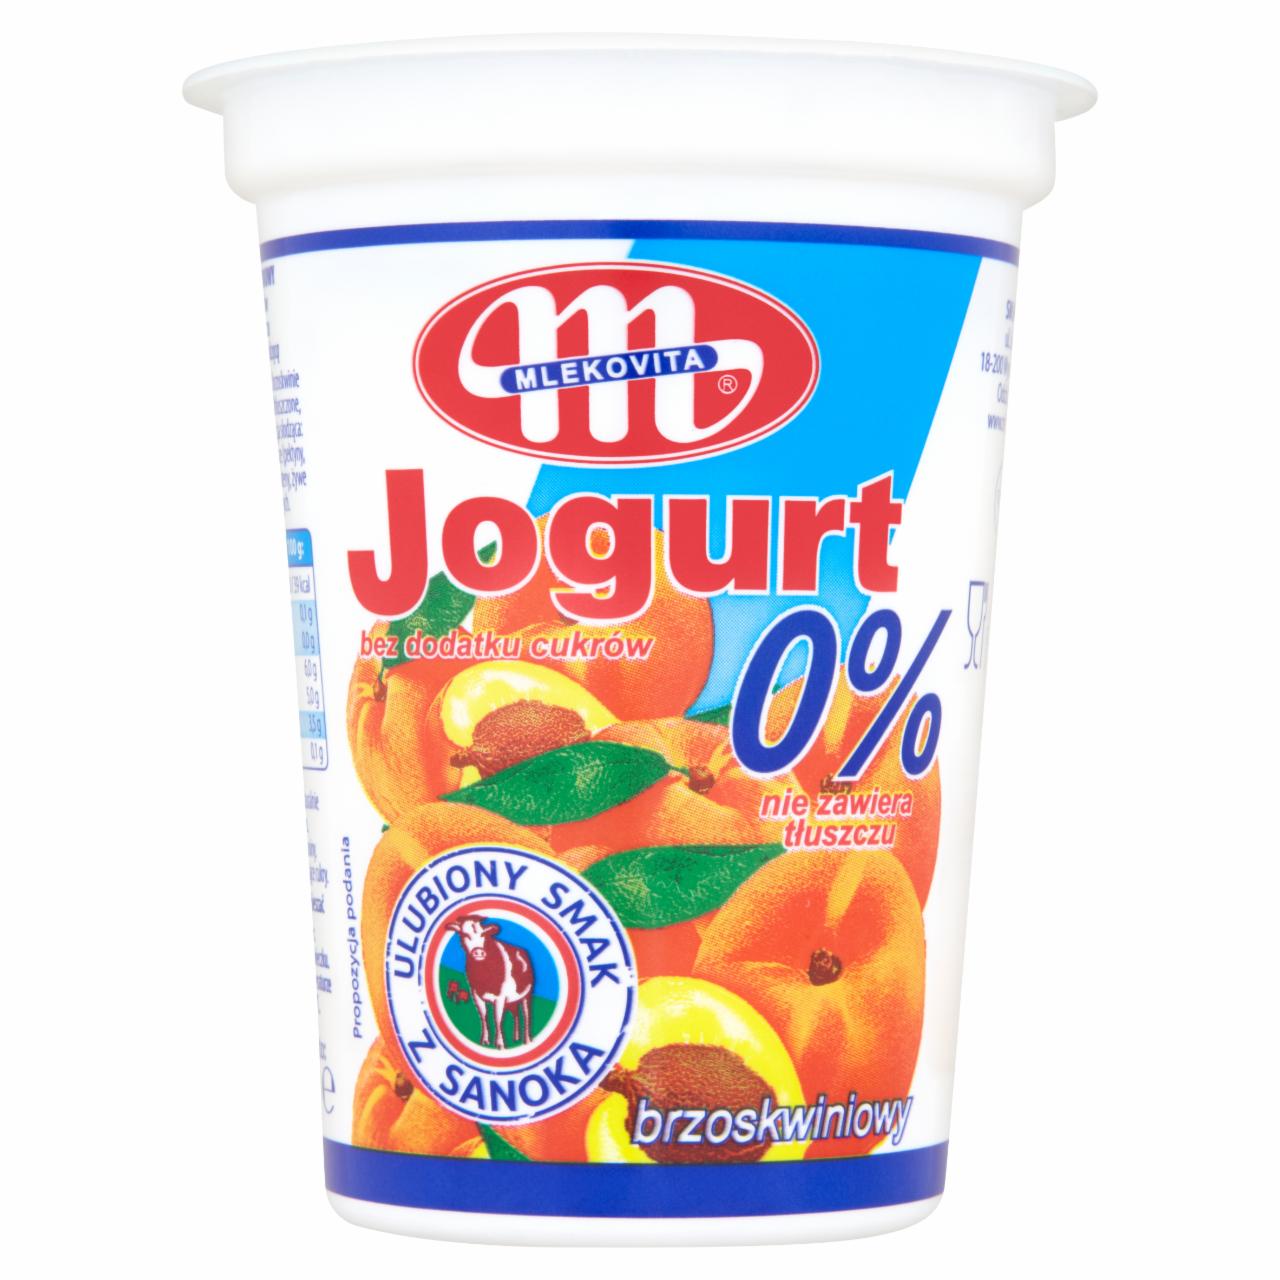 Zdjęcia - Mlekovita Jogurt 0% brzoskwiniowy 400 g